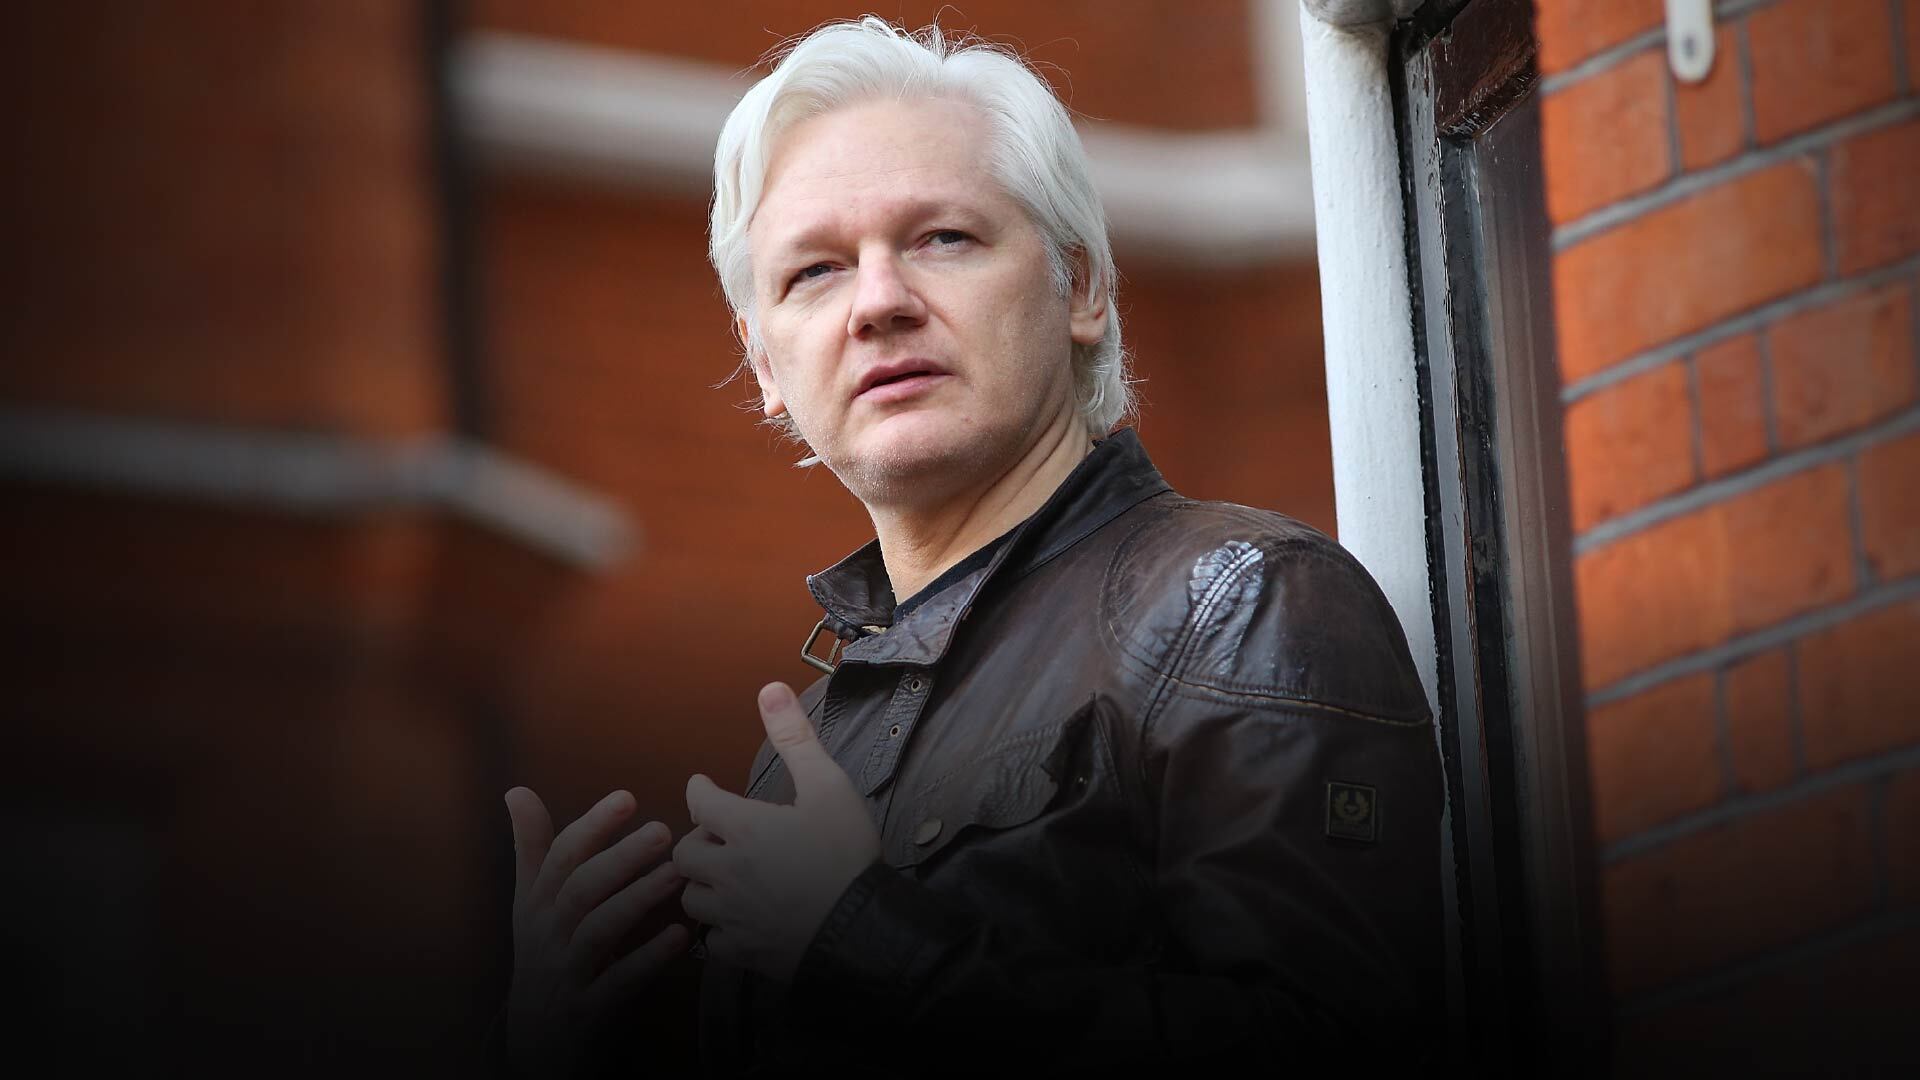 Would Julian Assanges extradition threaten press freedoms worldwide? | Julian Assange [Video]